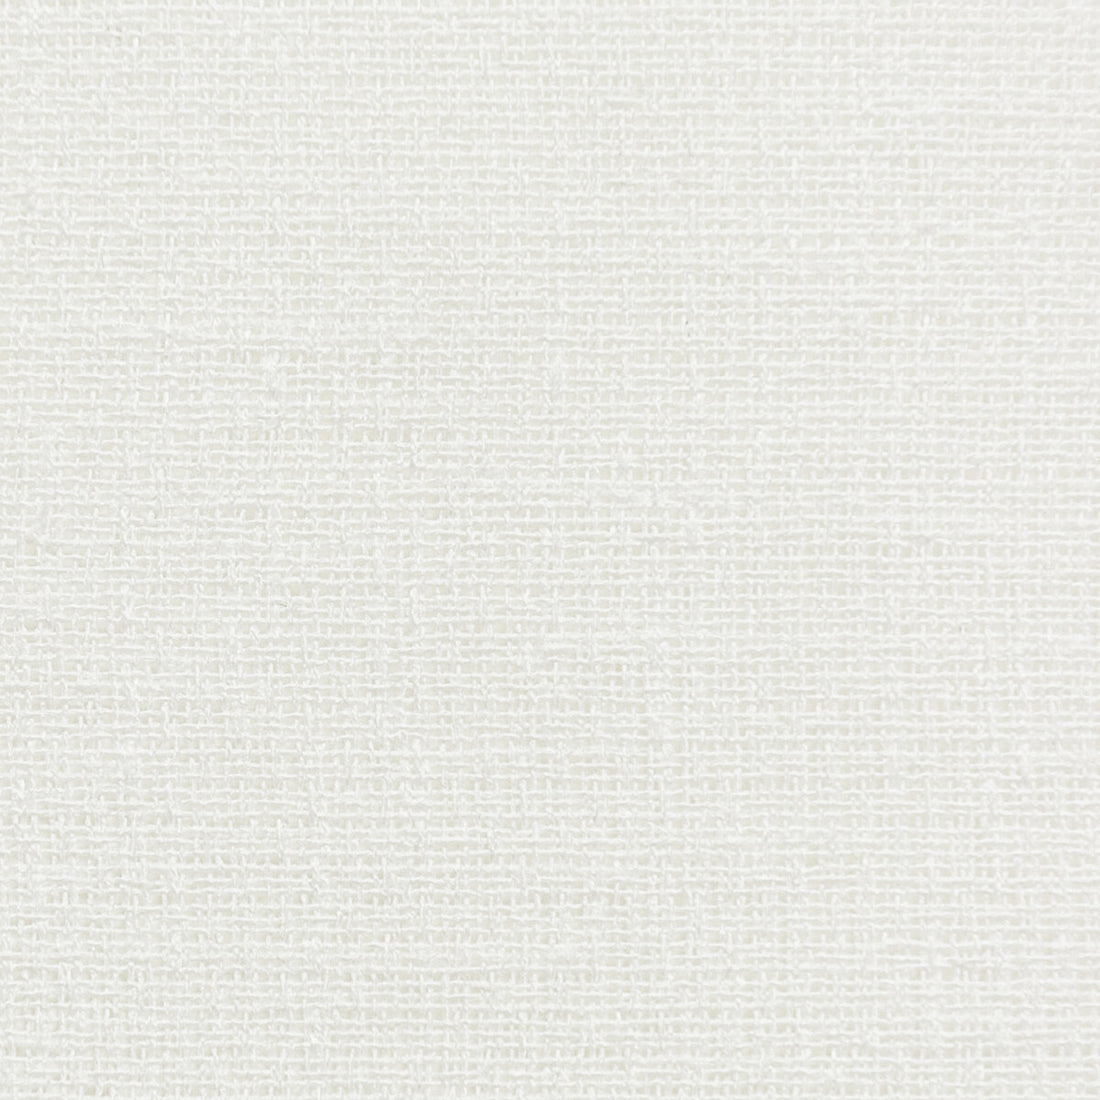 Kravet Basics fabric in 4746-1 color - pattern 4746.1.0 - by Kravet Basics